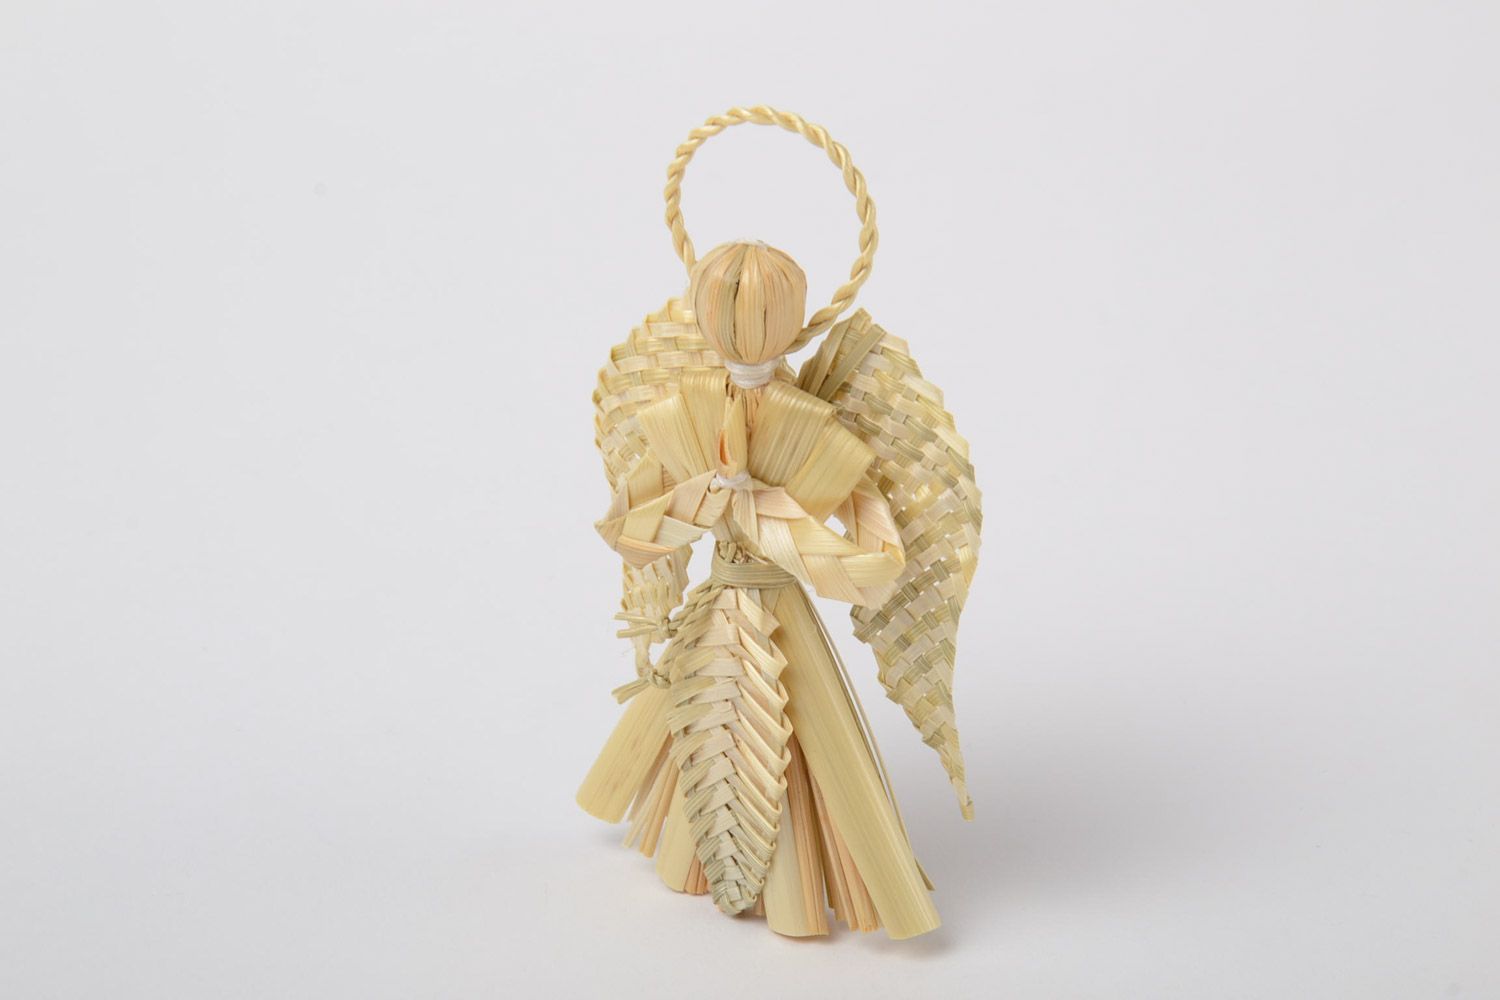 Интерьерная подвеска плетеная из соломы ручной работы Ангел-хранитель эко-декор фото 1